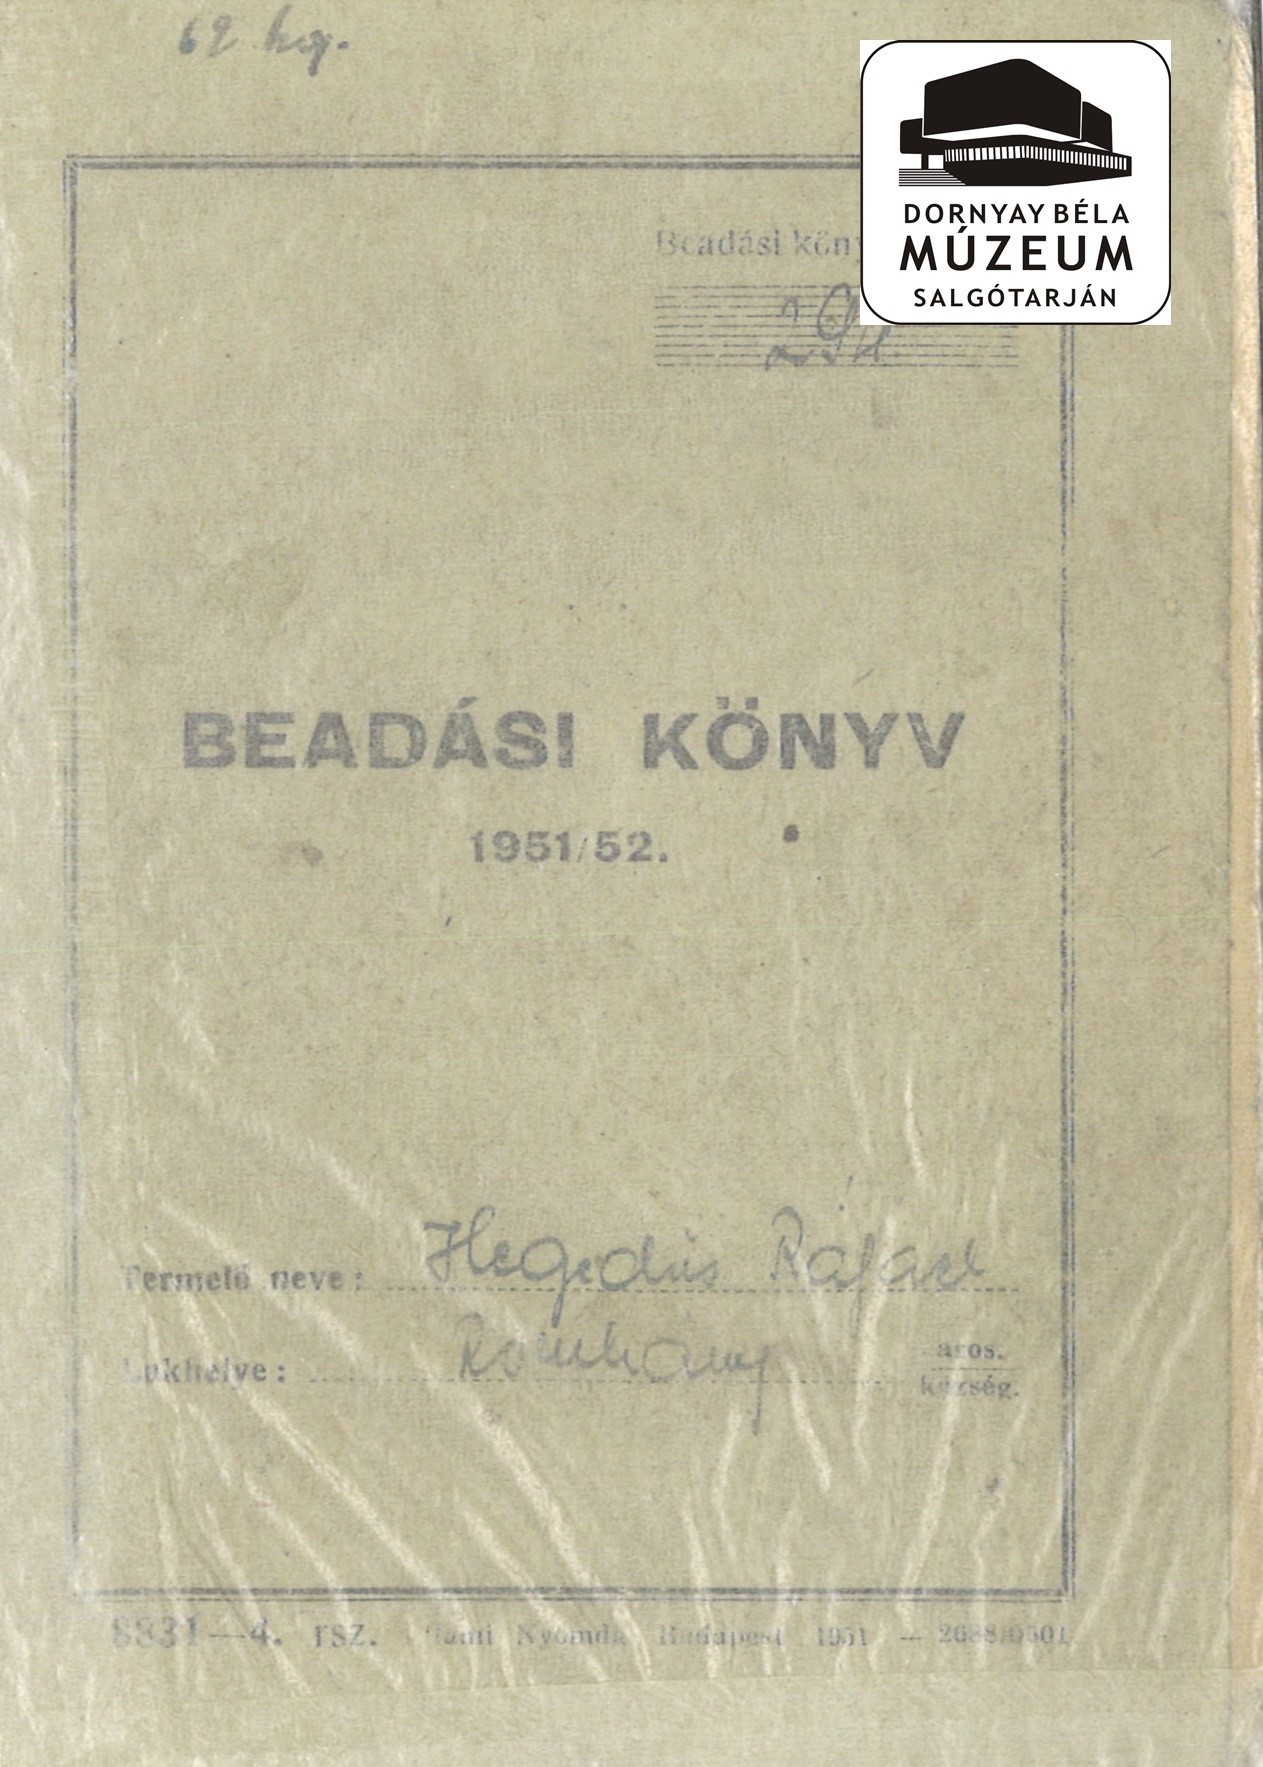 Beadási könyv. Hegedűs Rafael, Romhány (Dornyay Béla Múzeum, Salgótarján CC BY-NC-SA)